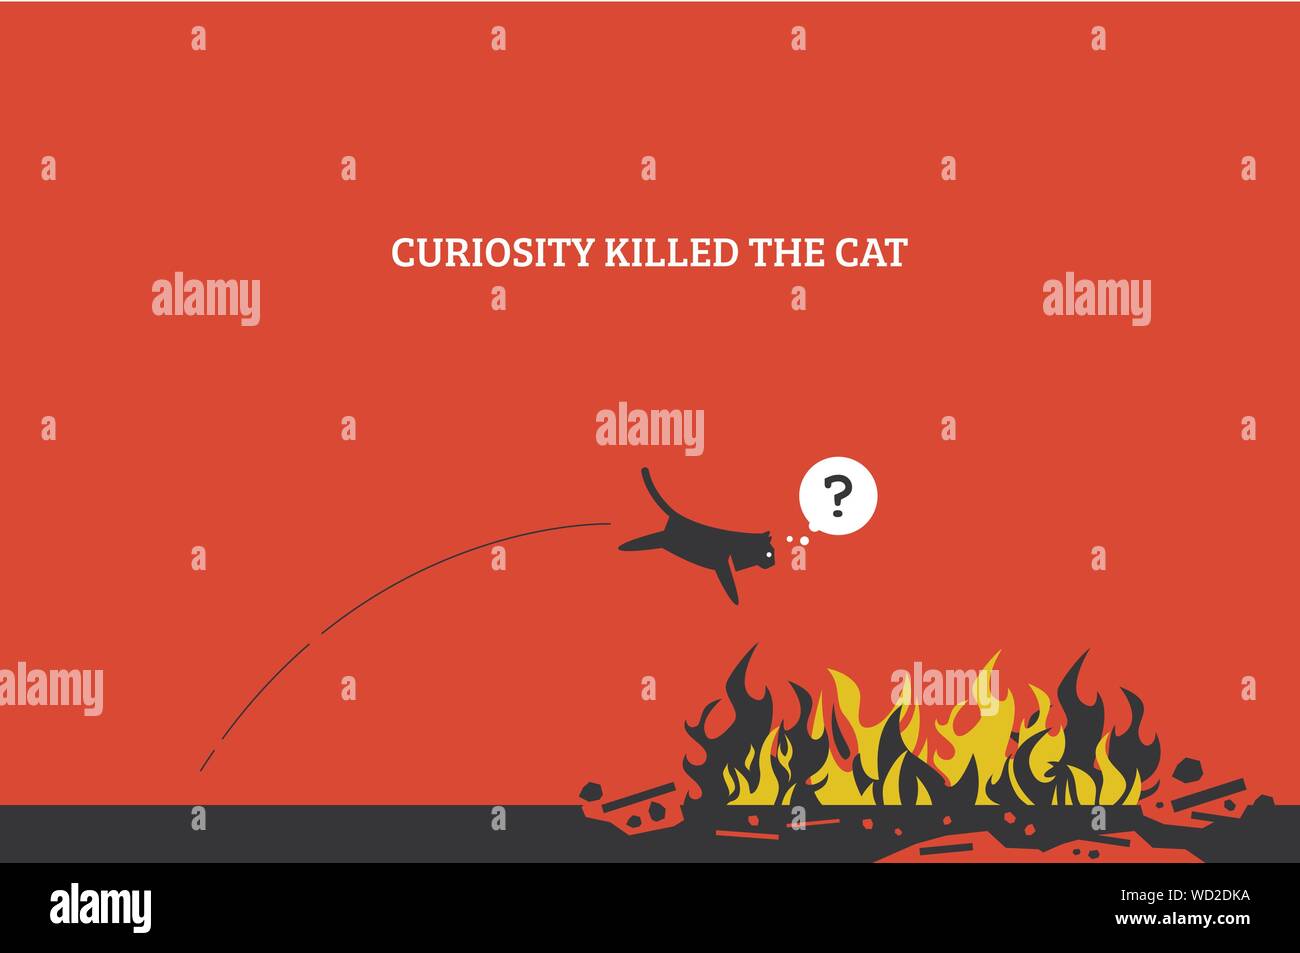 Neugier tötet die Katze. Vektorgrafiken zeigt ein Katzensprung ins Feuer und tötet sich selbst, weil sie neugierig sind und wissen wollen, was Feuer ist. Stock Vektor